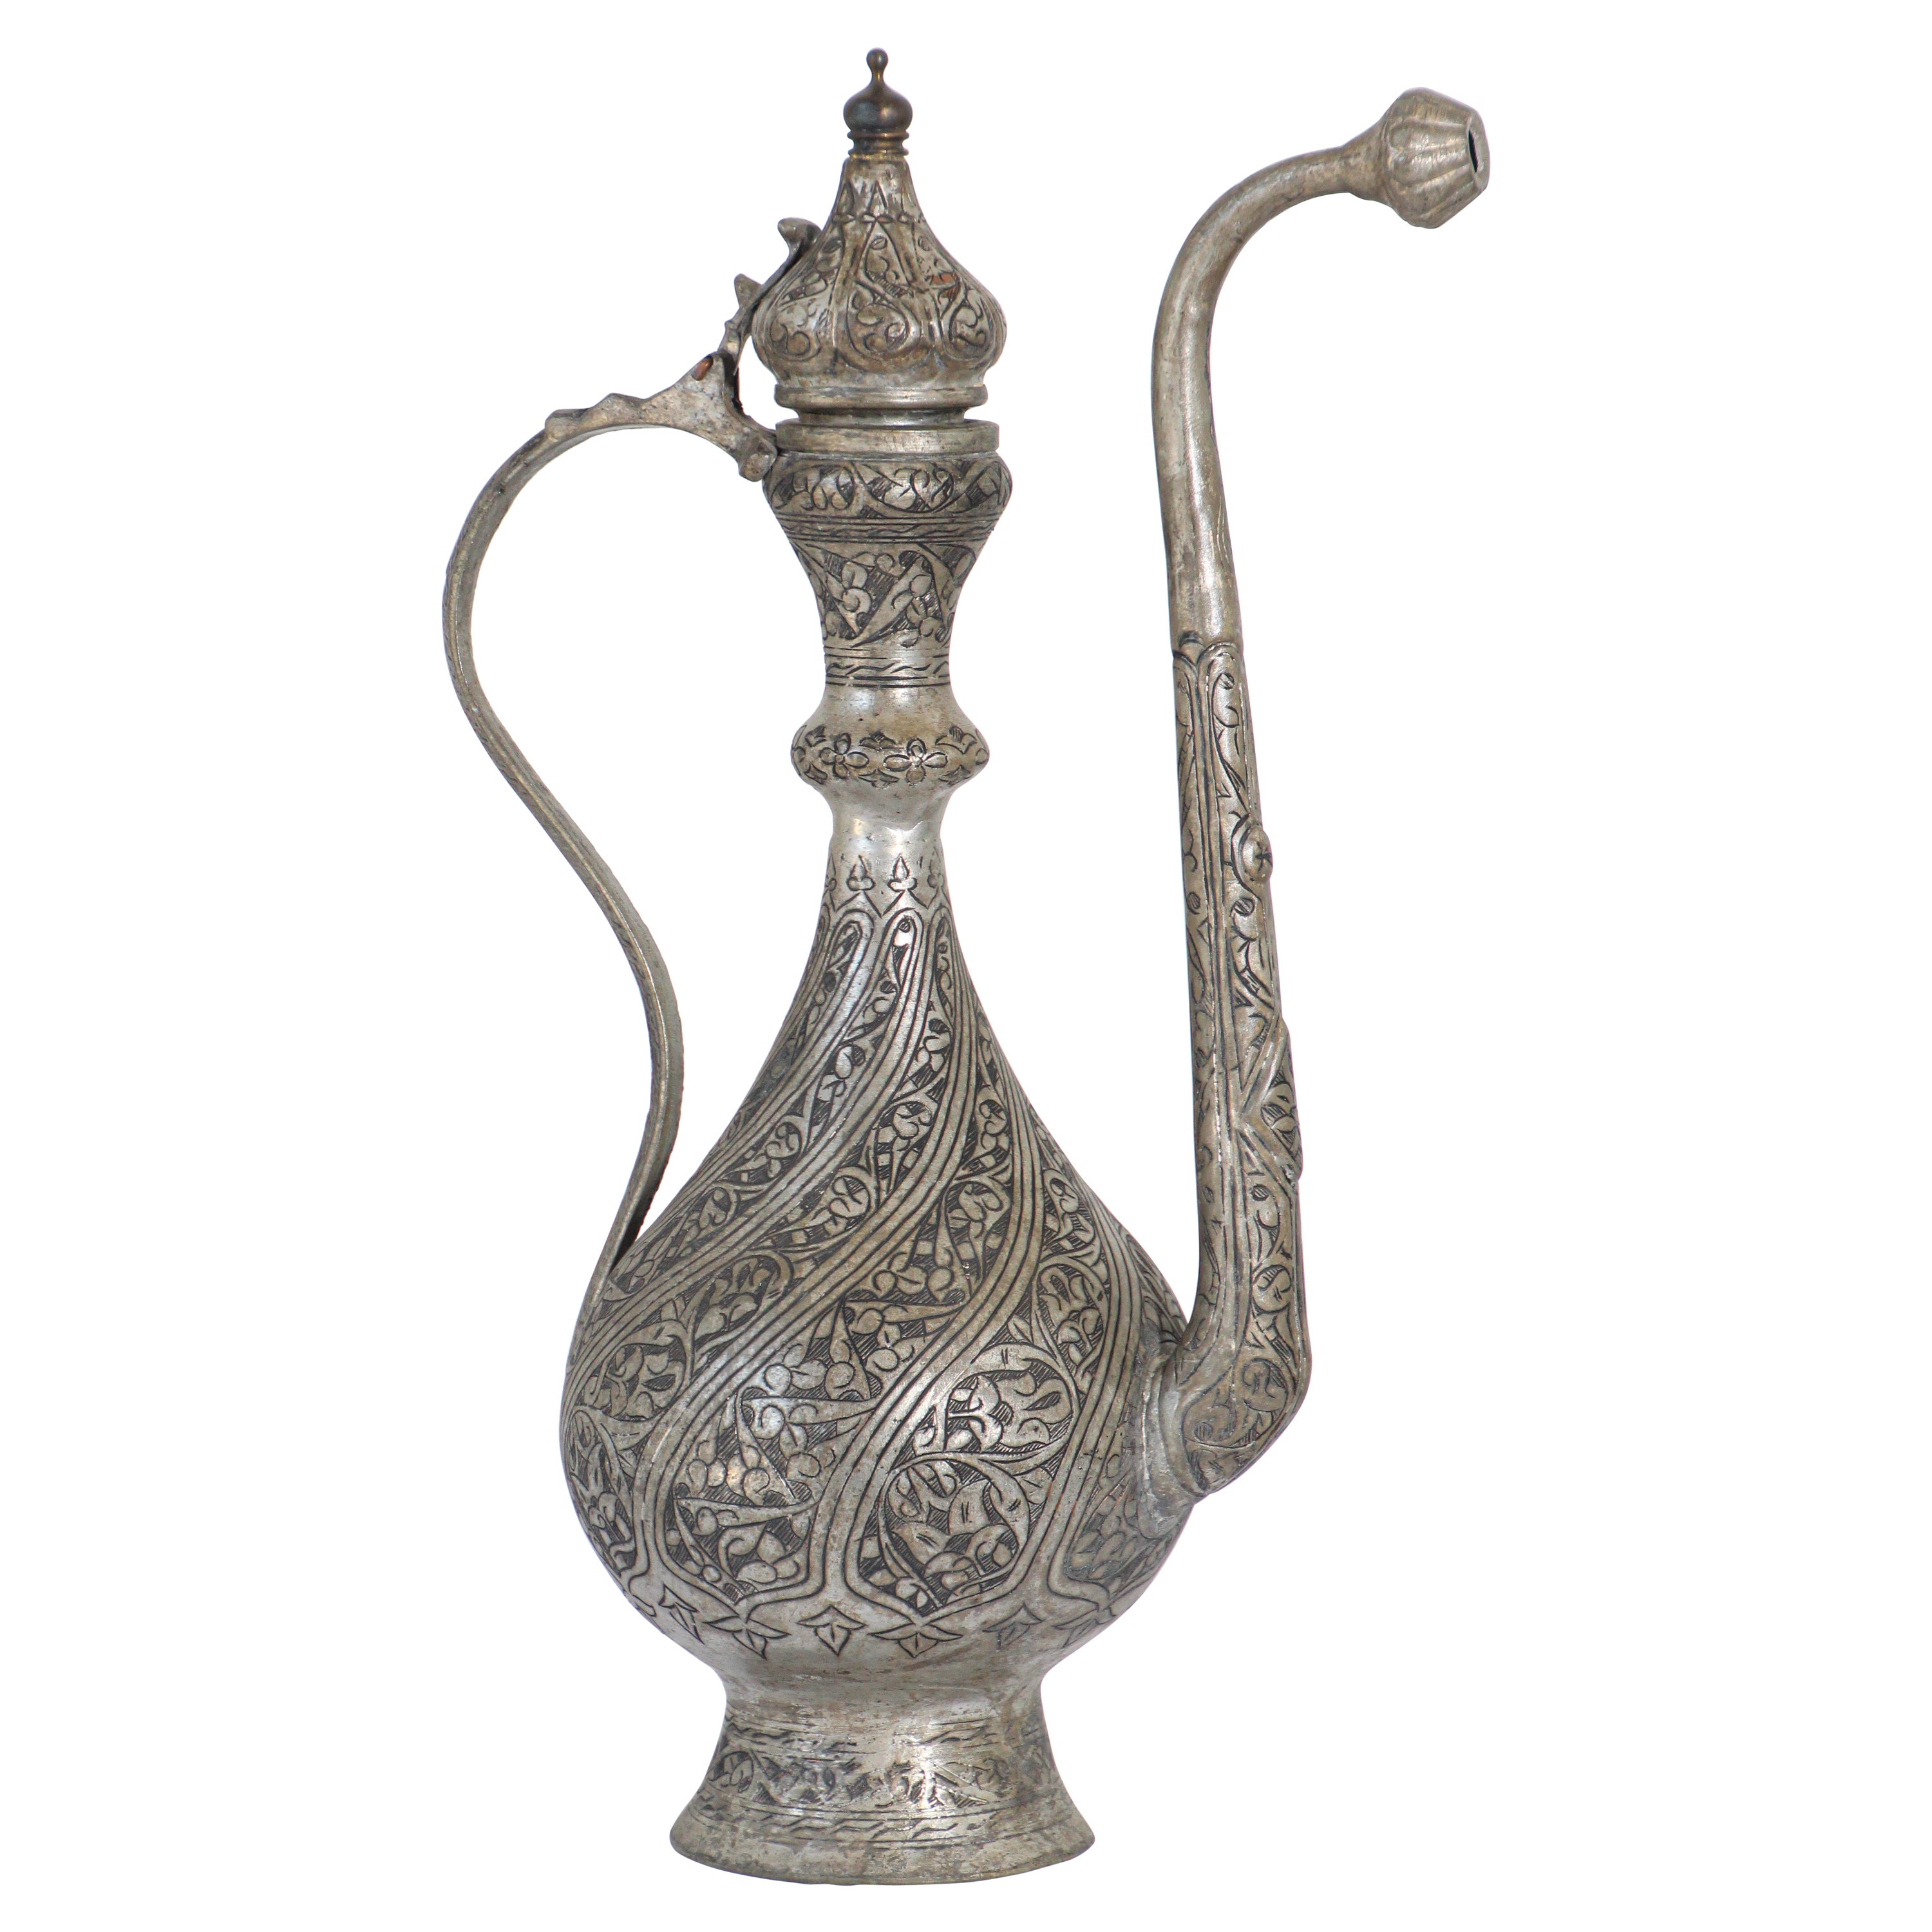 Aiguière en cuivre teinté de Turquie ottomane islamique du Moyen-Orient